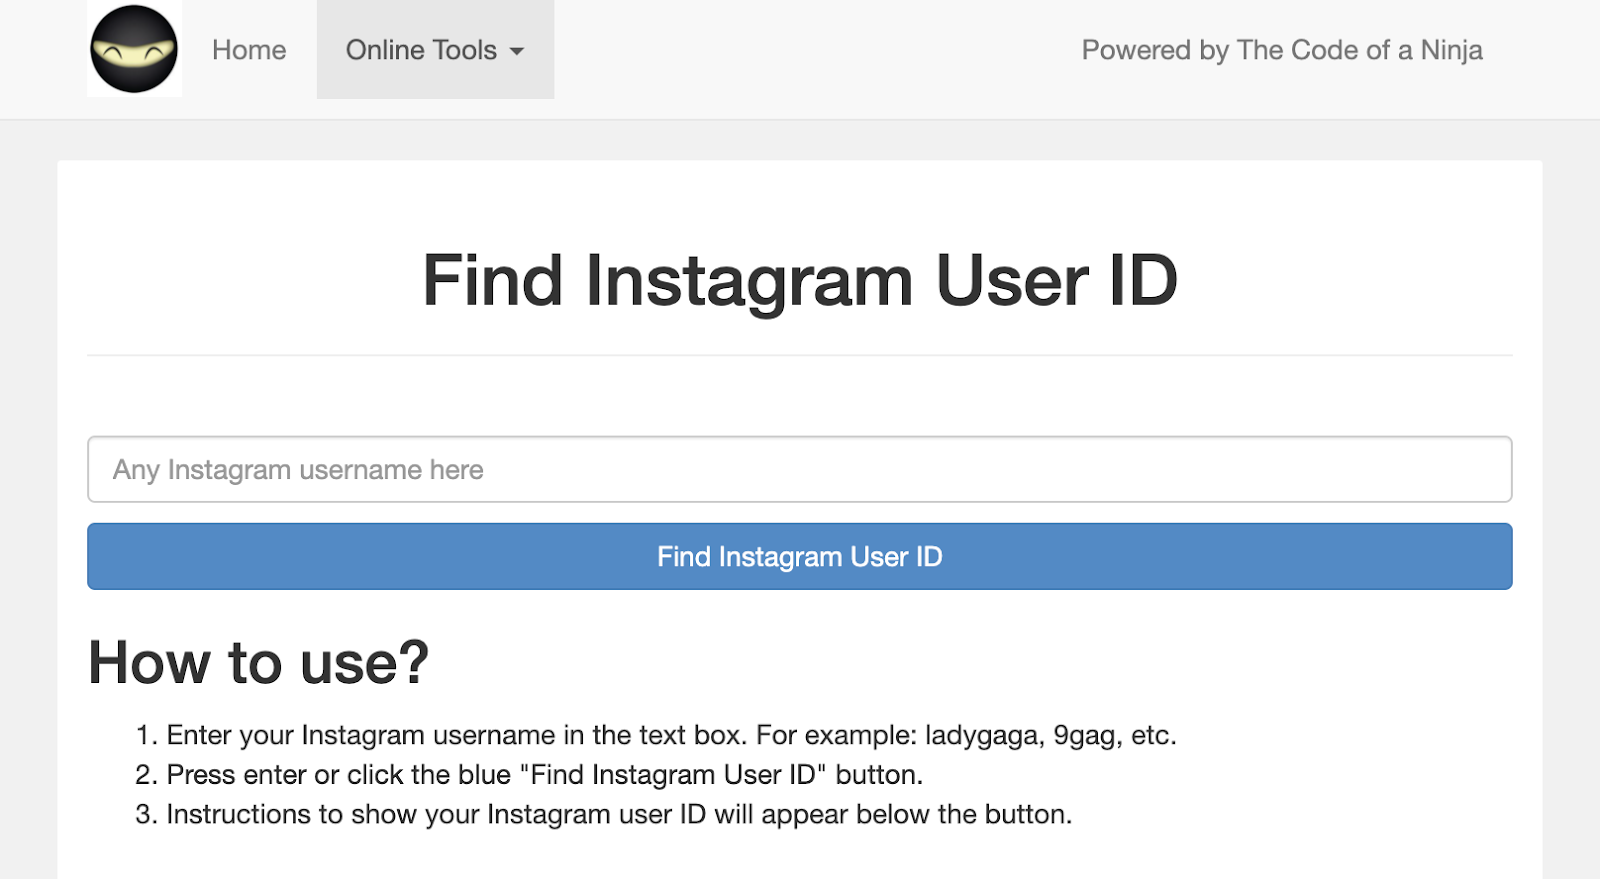 código de um ninja encontrando ID de usuário do Instagram